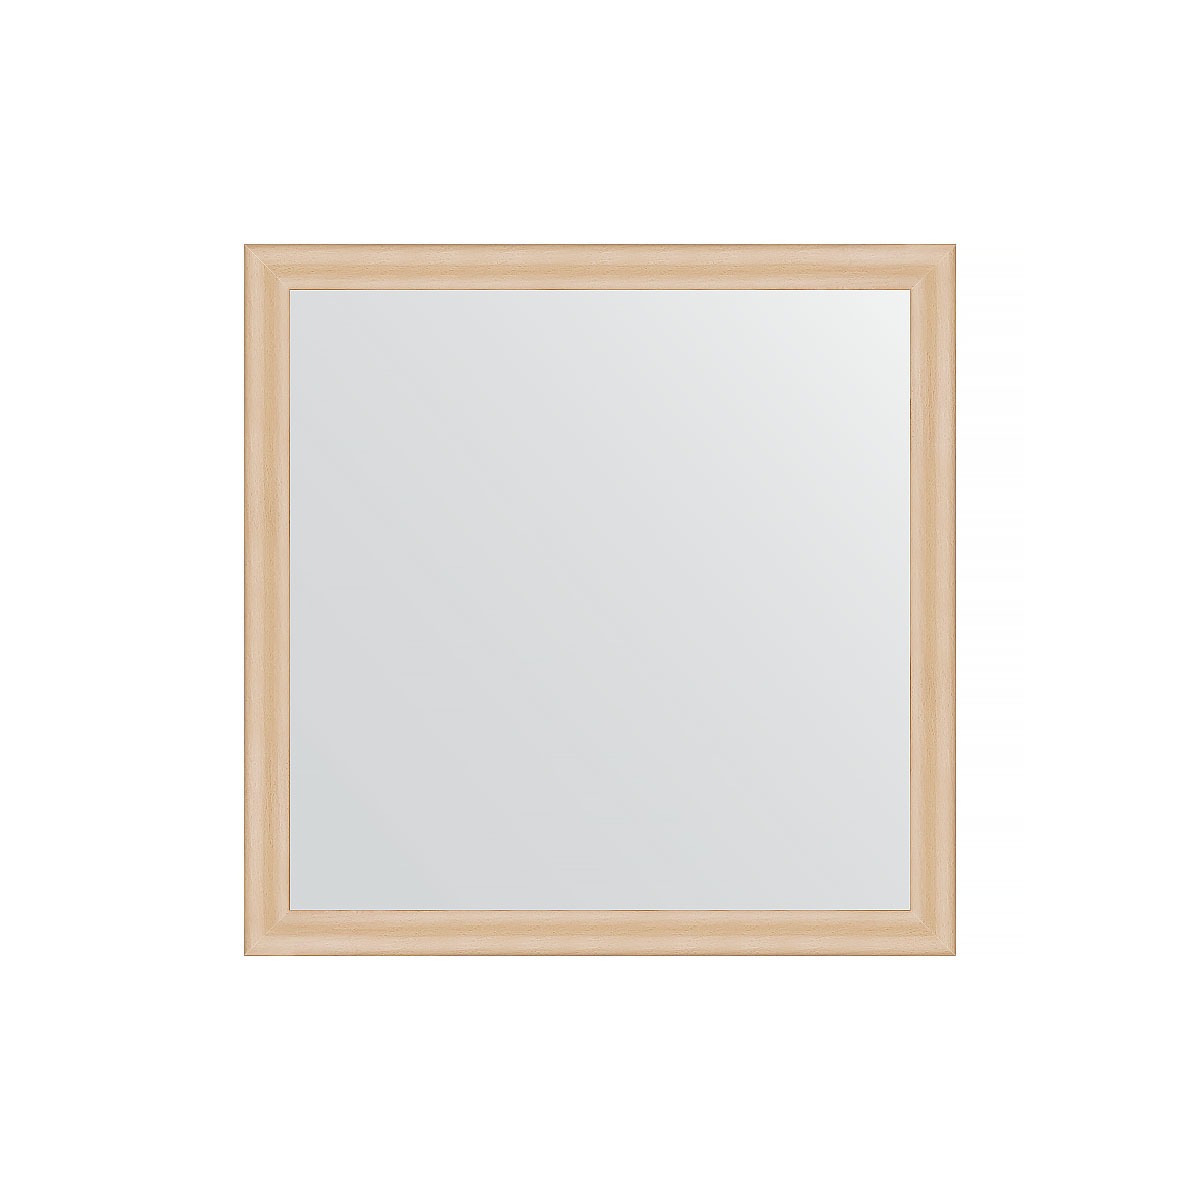 Зеркало в багетной раме Evoform бук 37 мм 60х60 см зеркало в багетной раме evoform дуб 37 мм 60х60 см